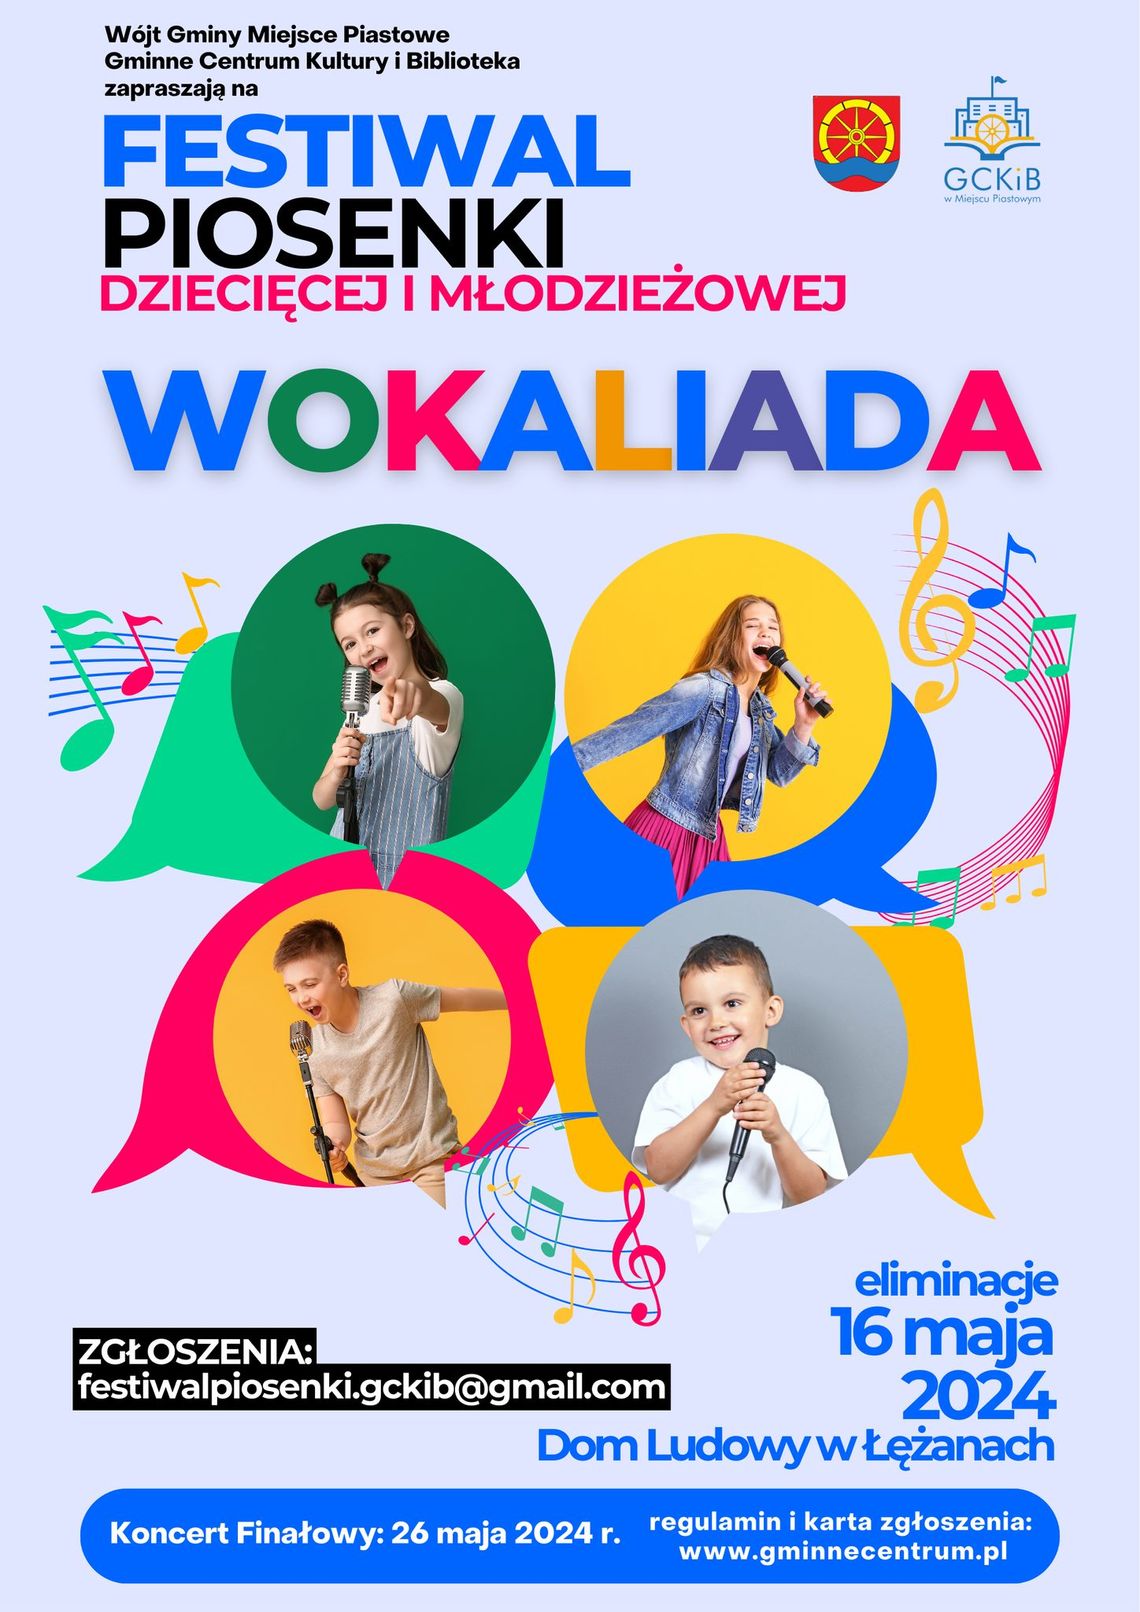 Festiwal Piosenki Dziecięcej i Młodzieżowej WOKALIADA